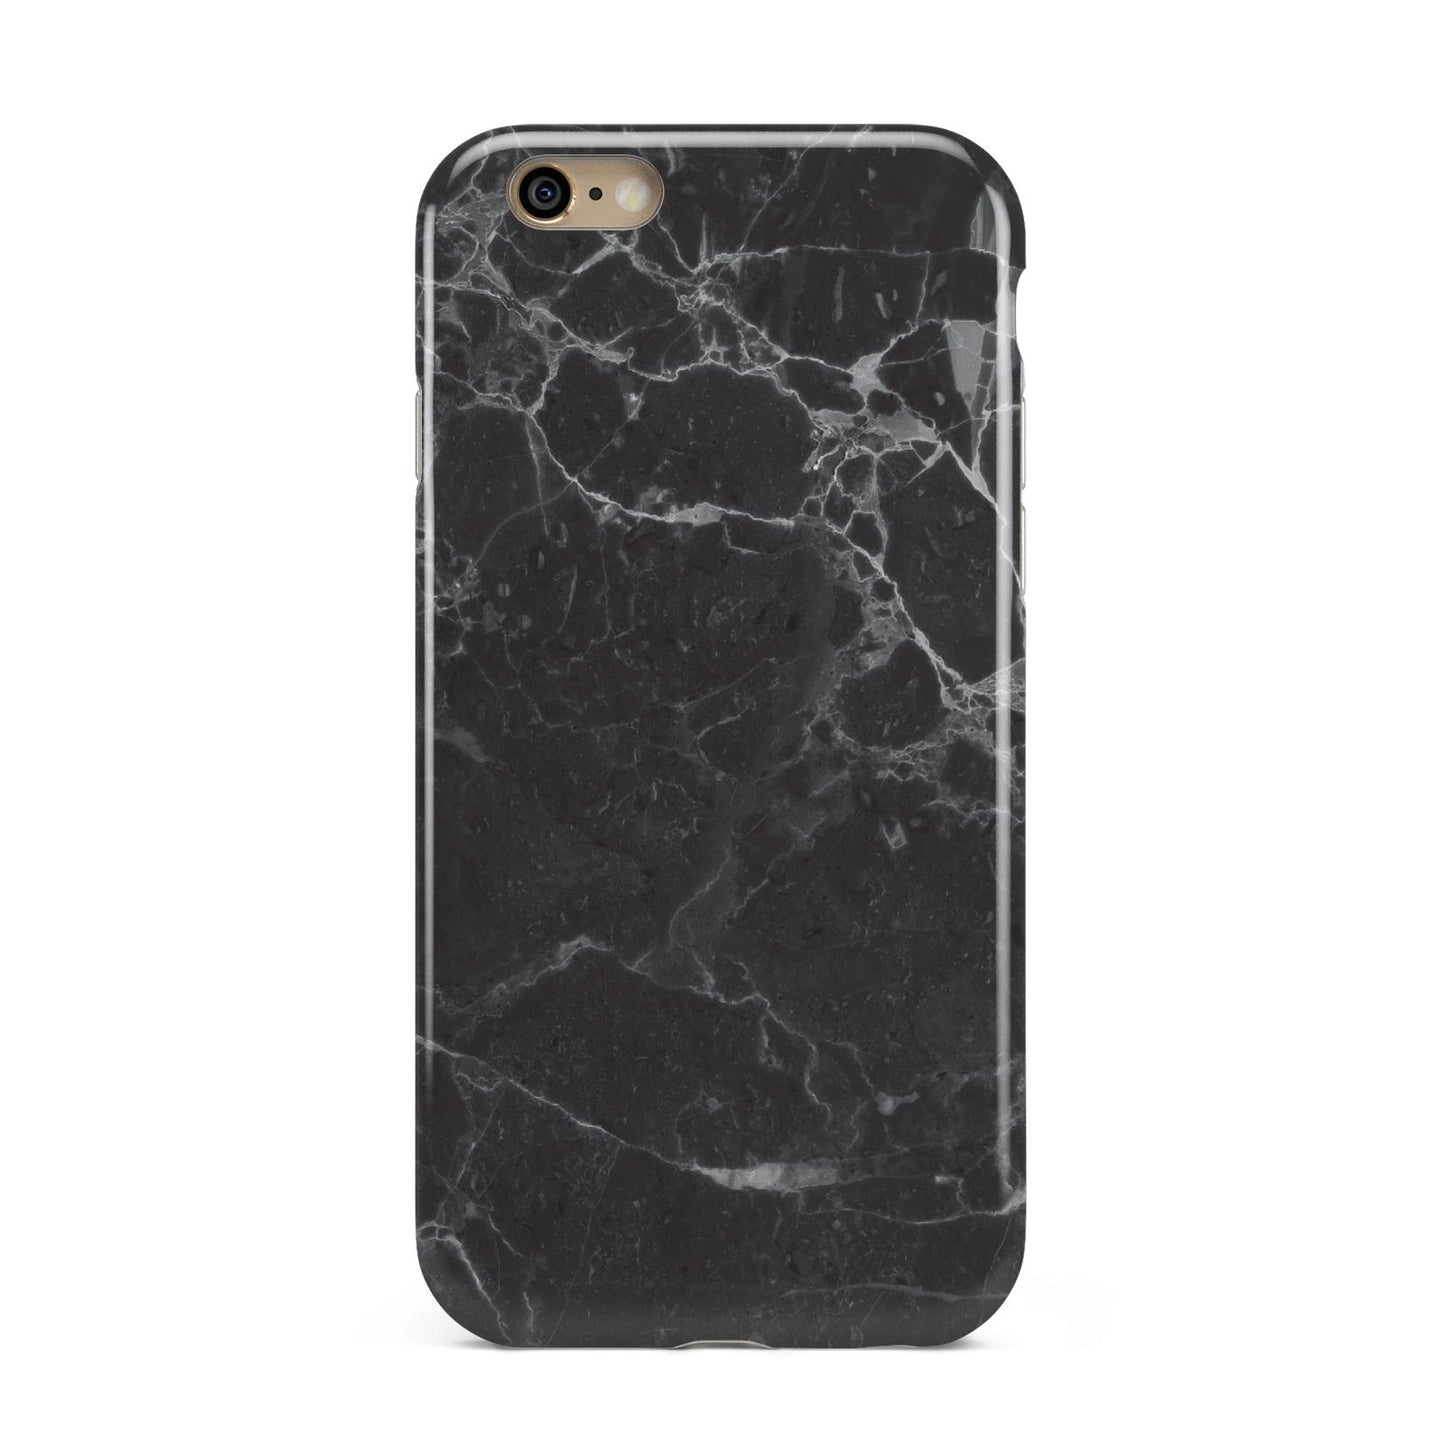 Faux Marble Effect Black Apple iPhone 6 3D Tough Case